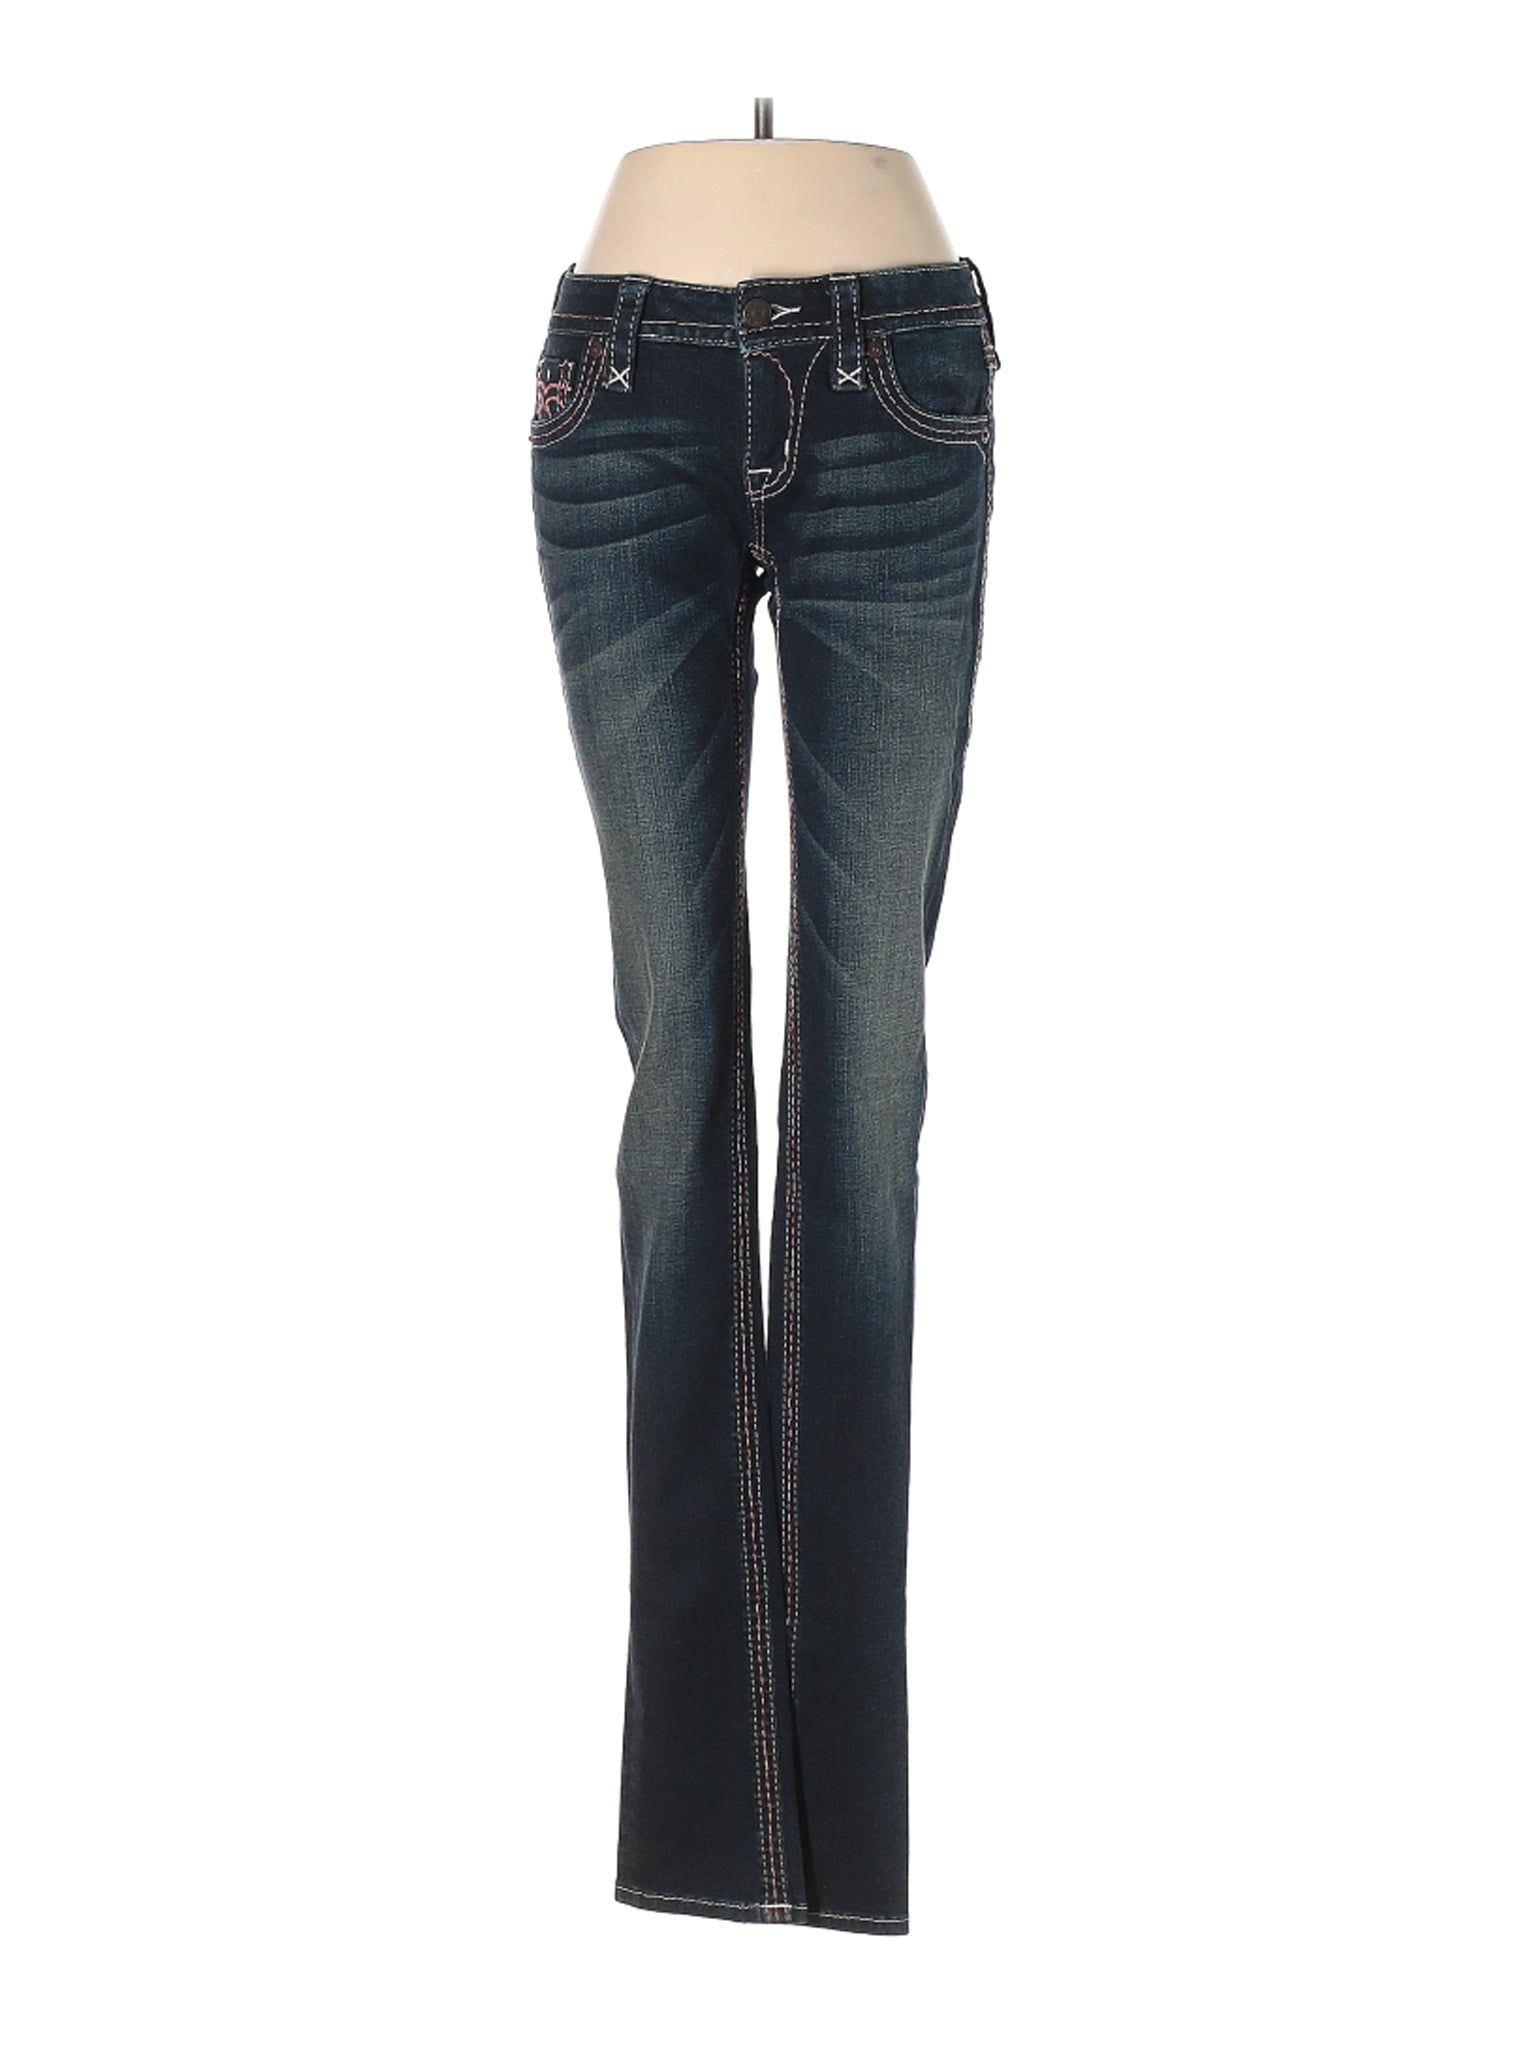 Rock Revival - Pre-Owned Rock Revival Women's Size 26W Jeans - Walmart ...